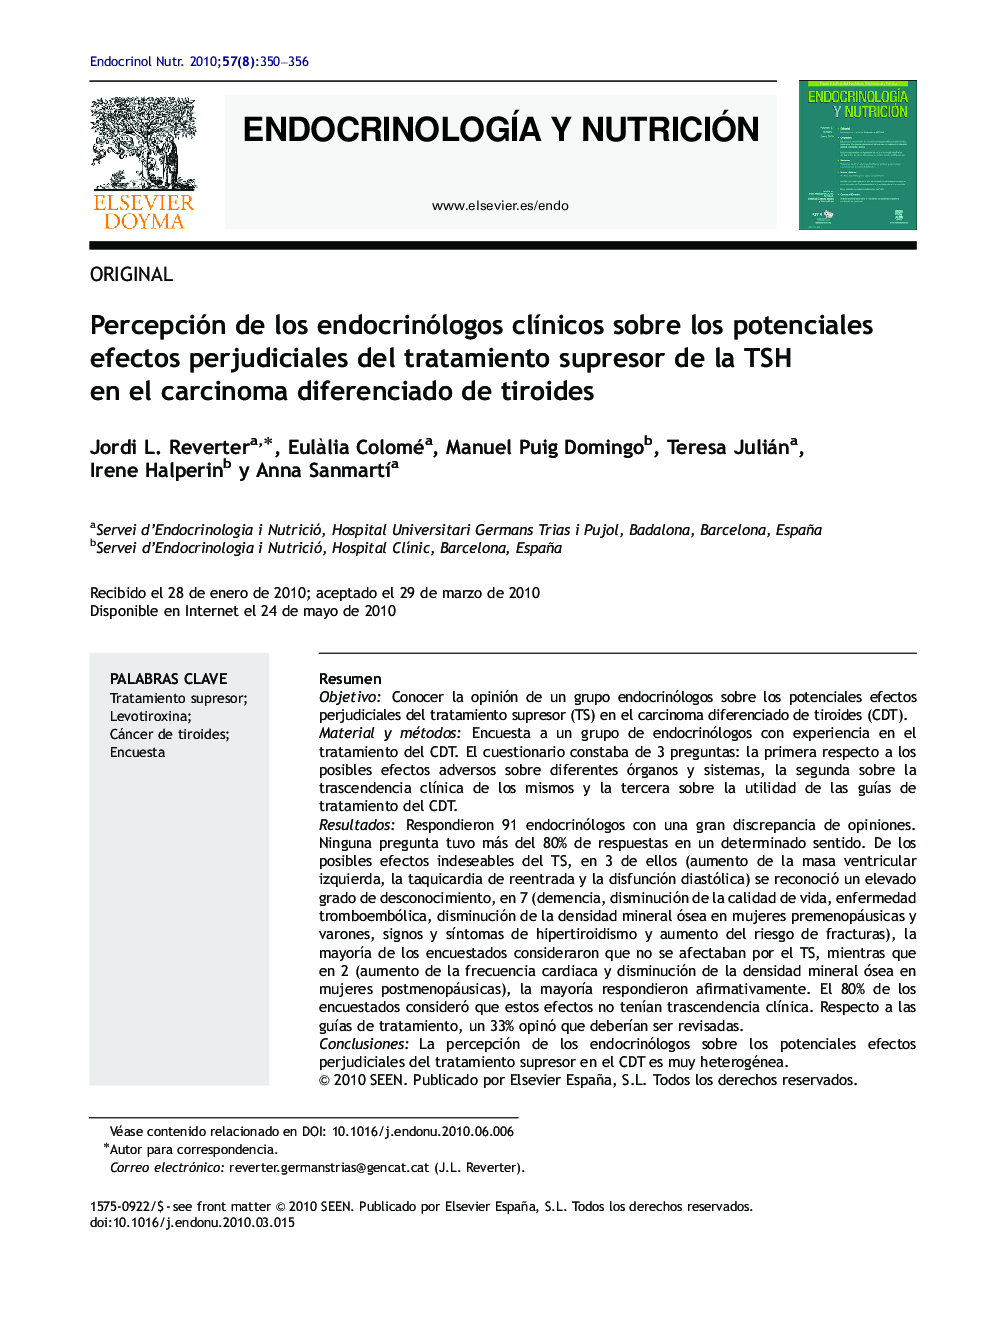 Percepción de los endocrinólogos clínicos sobre los potenciales efectos perjudiciales del tratamiento supresor de la TSH en el carcinoma diferenciado de tiroides